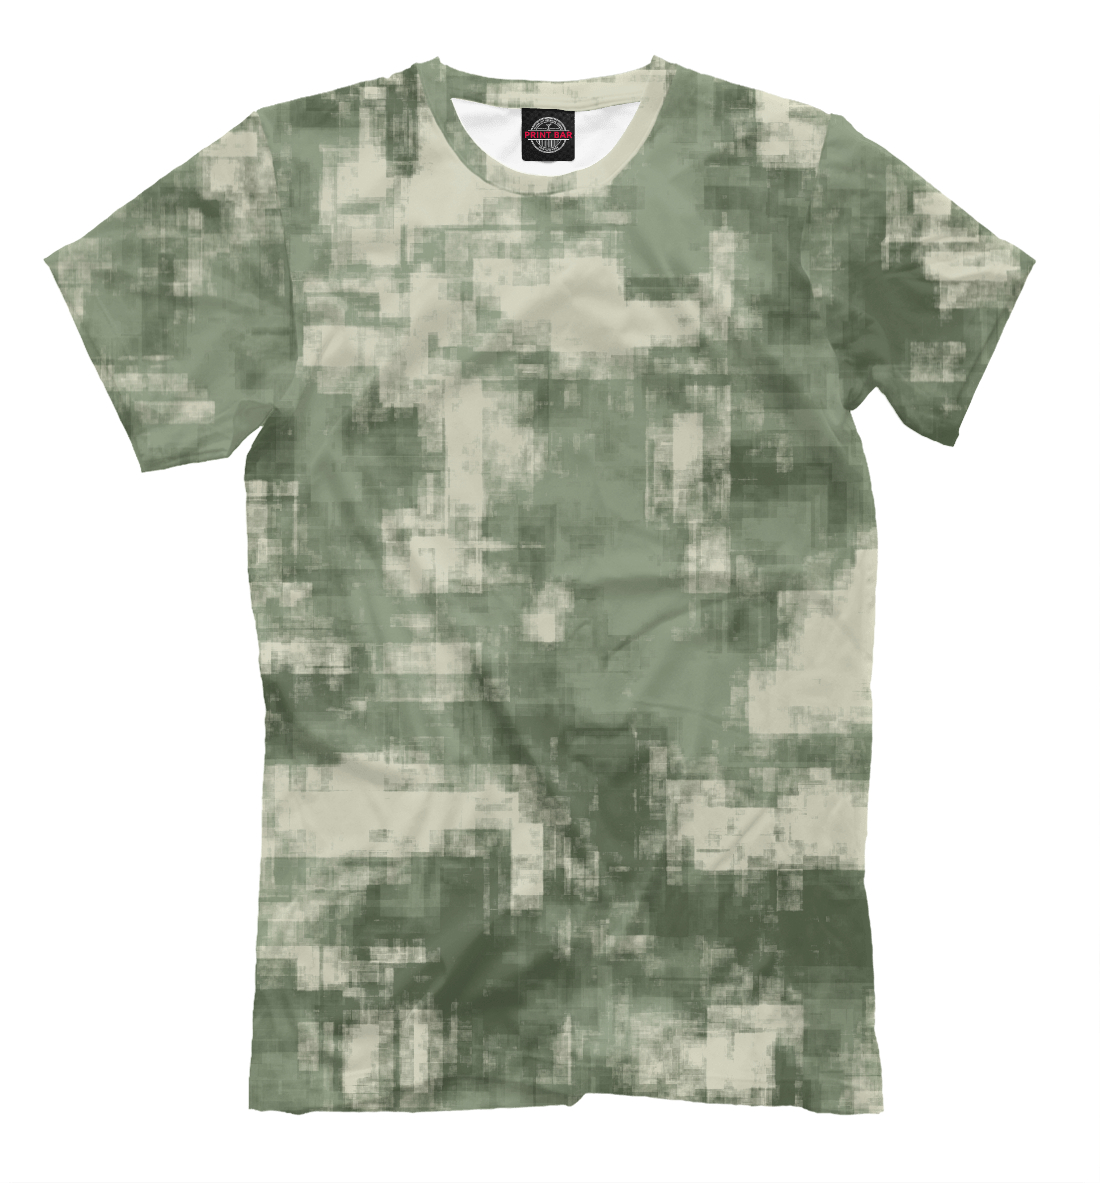 Детская Футболка Военный камуфляж- одежда для мужчин и женщин для мальчиков, артикул CMF-442561-fut-2mp